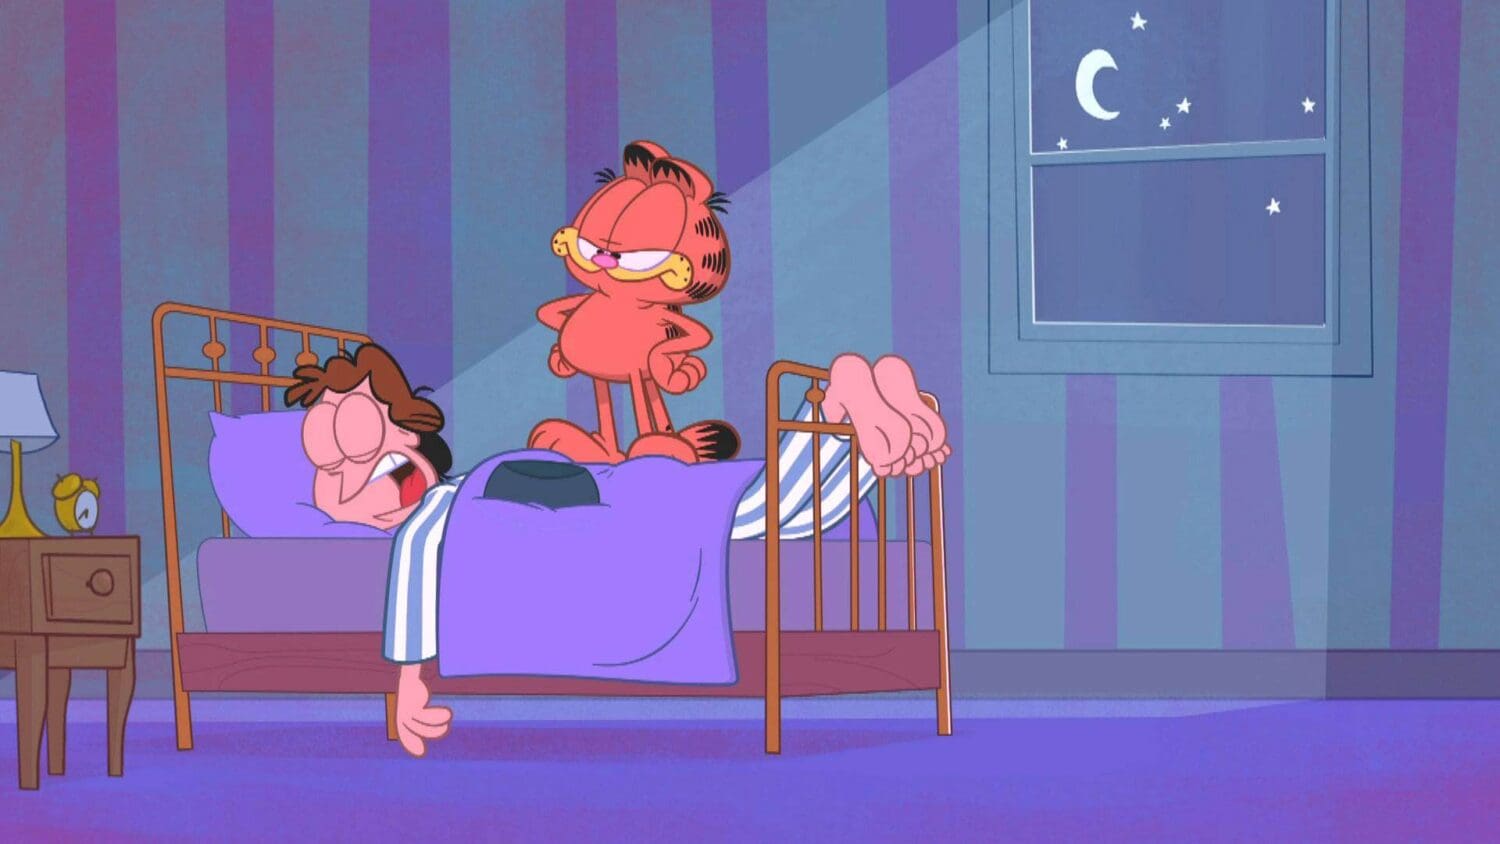 Garfield and Jon